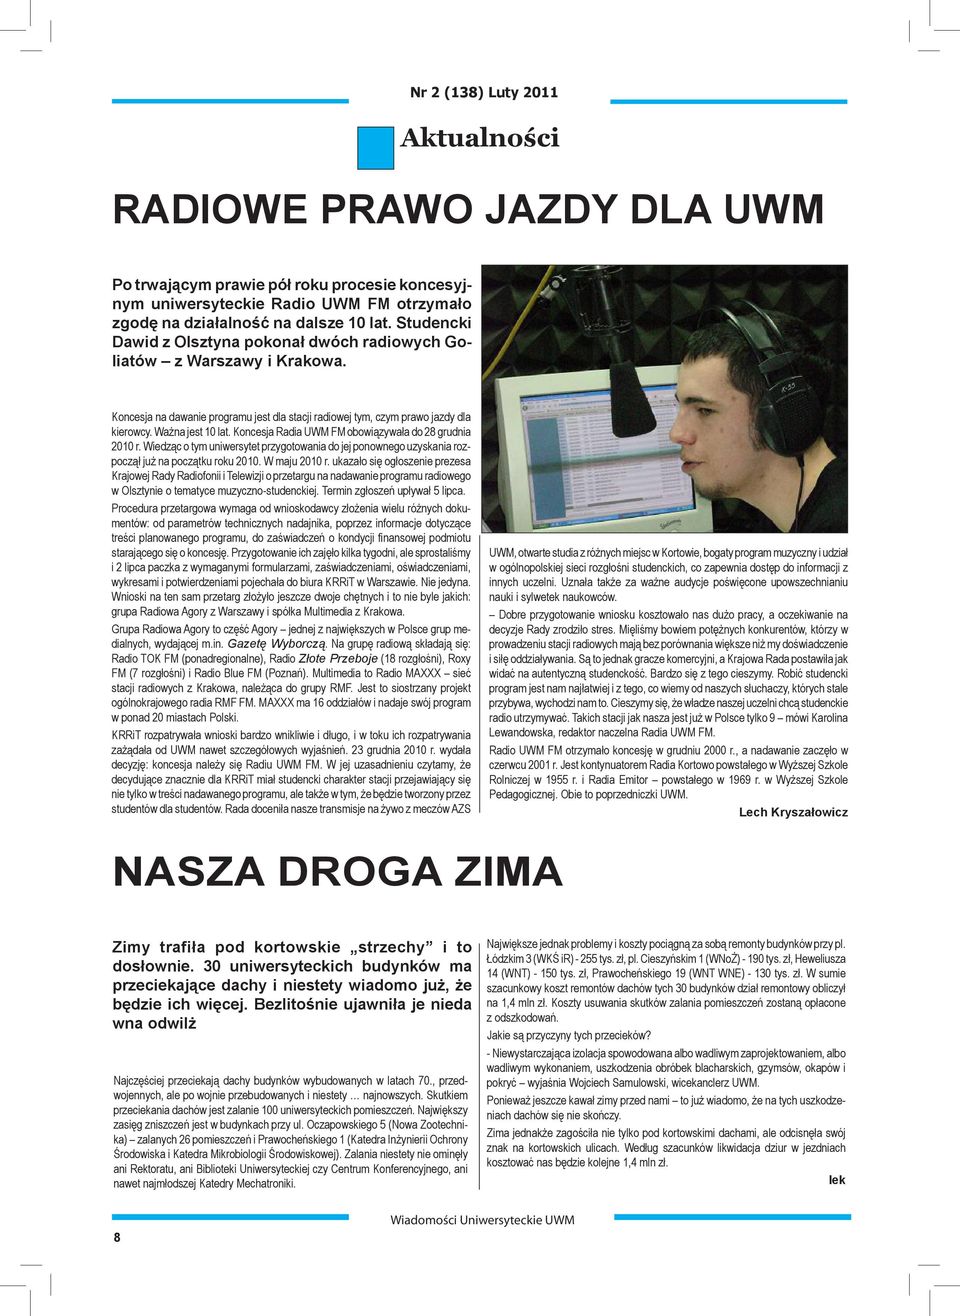 Koncesja Radia UWM FM obowiązywała do 28 grudnia 2010 r. Wiedząc o tym uniwersytet przygotowania do jej ponownego uzyskania rozpoczął już na początku roku 2010. W maju 2010 r.